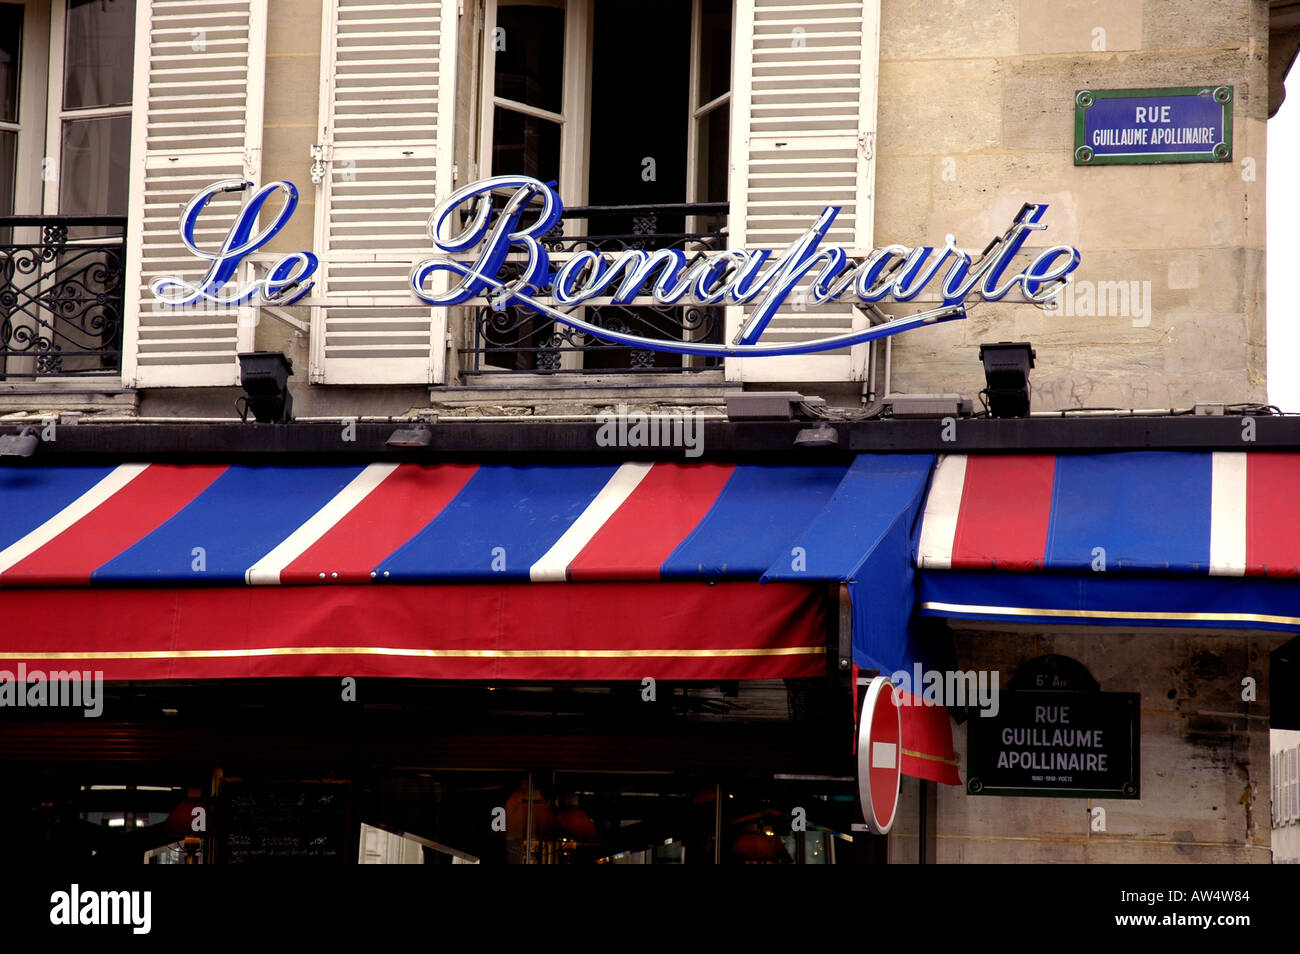 Cafe Le Bonaparte St Germain des Pres Rue Guillaume Apollinaire Paris ...